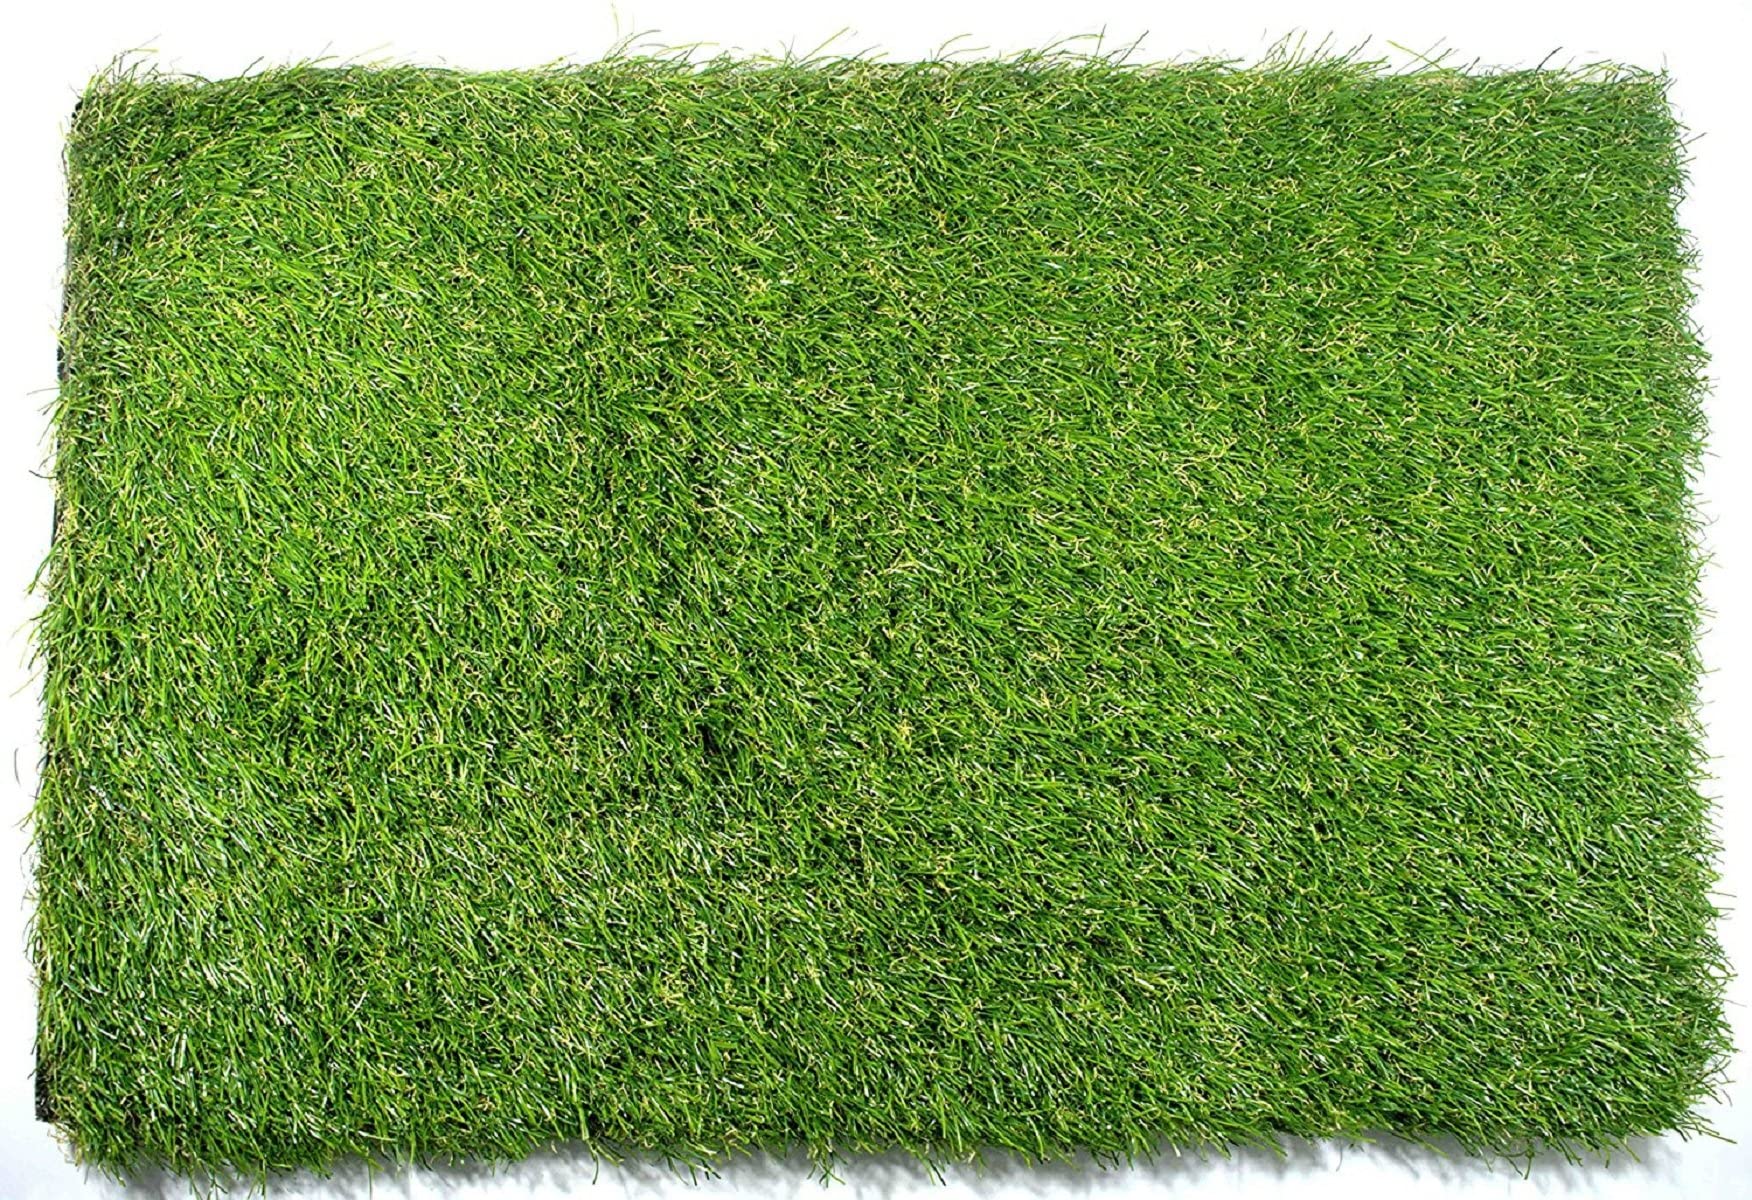 Kuber Industries PVC 45 MM Artificial Grass Door Mat- 24"x 15.2", Green (Grass0107),Standard